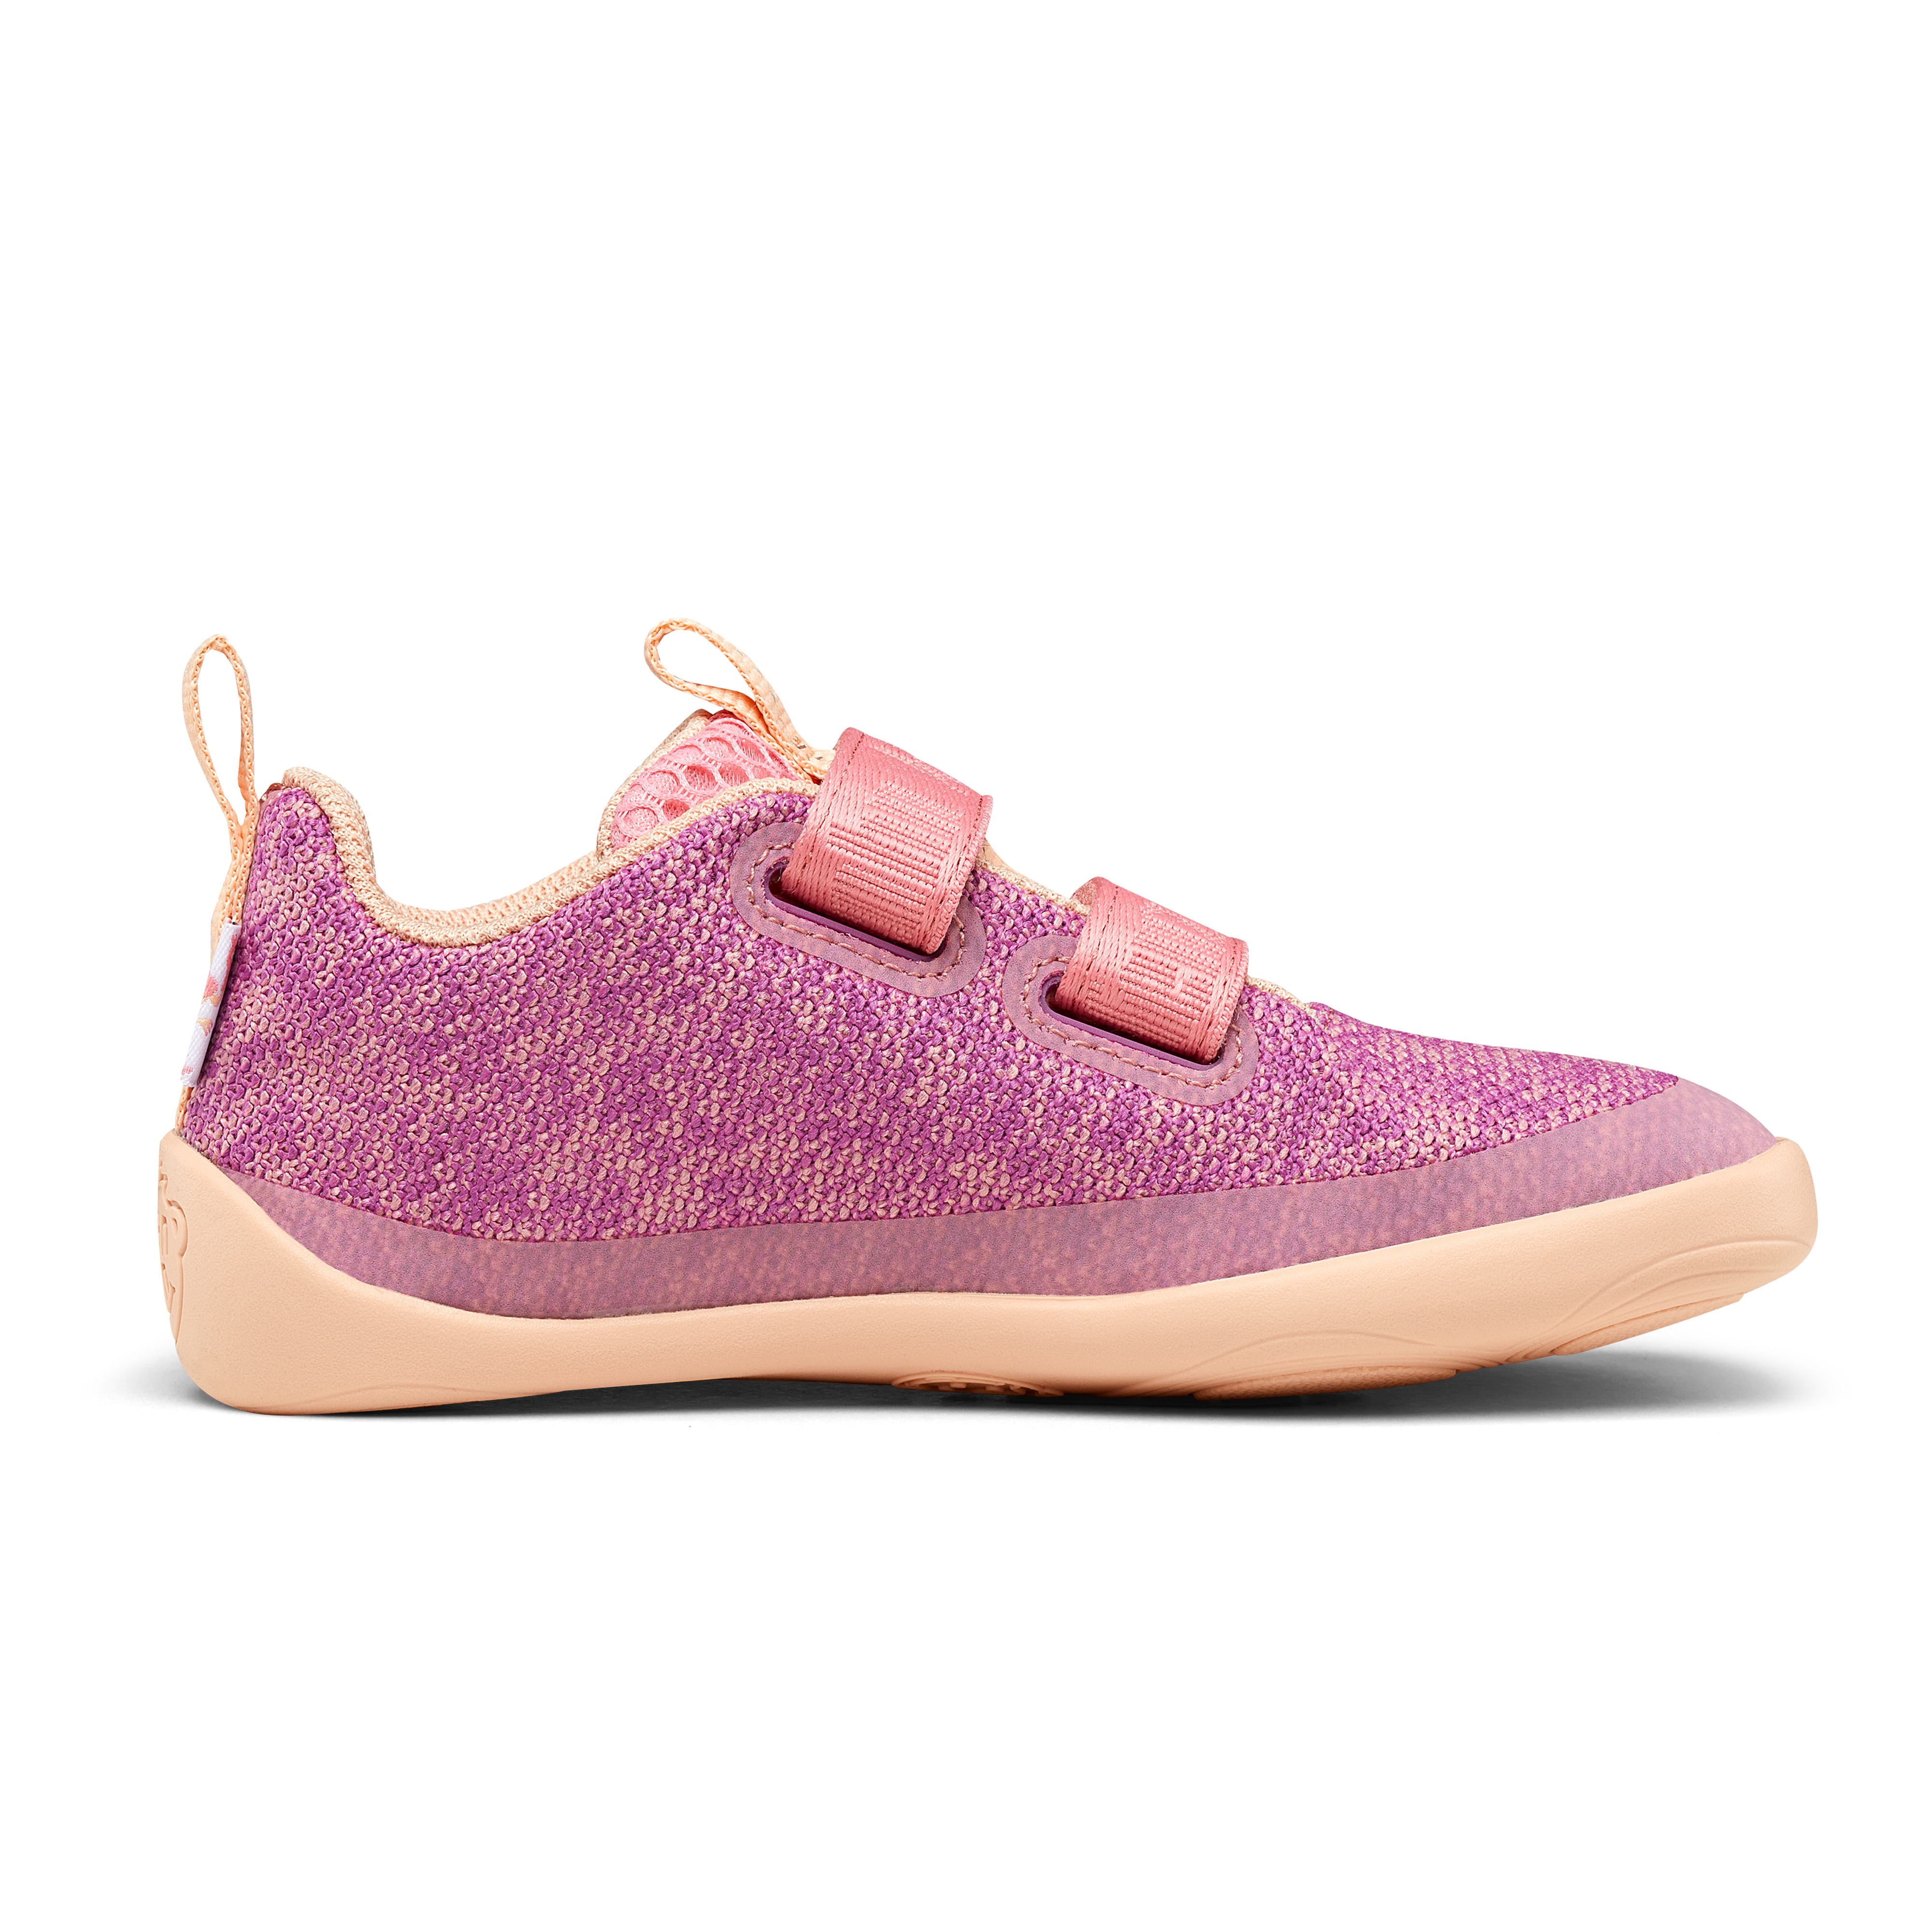 Affenzahn Knit Happy barfods sneakers til børn i farven flamingo, inderside